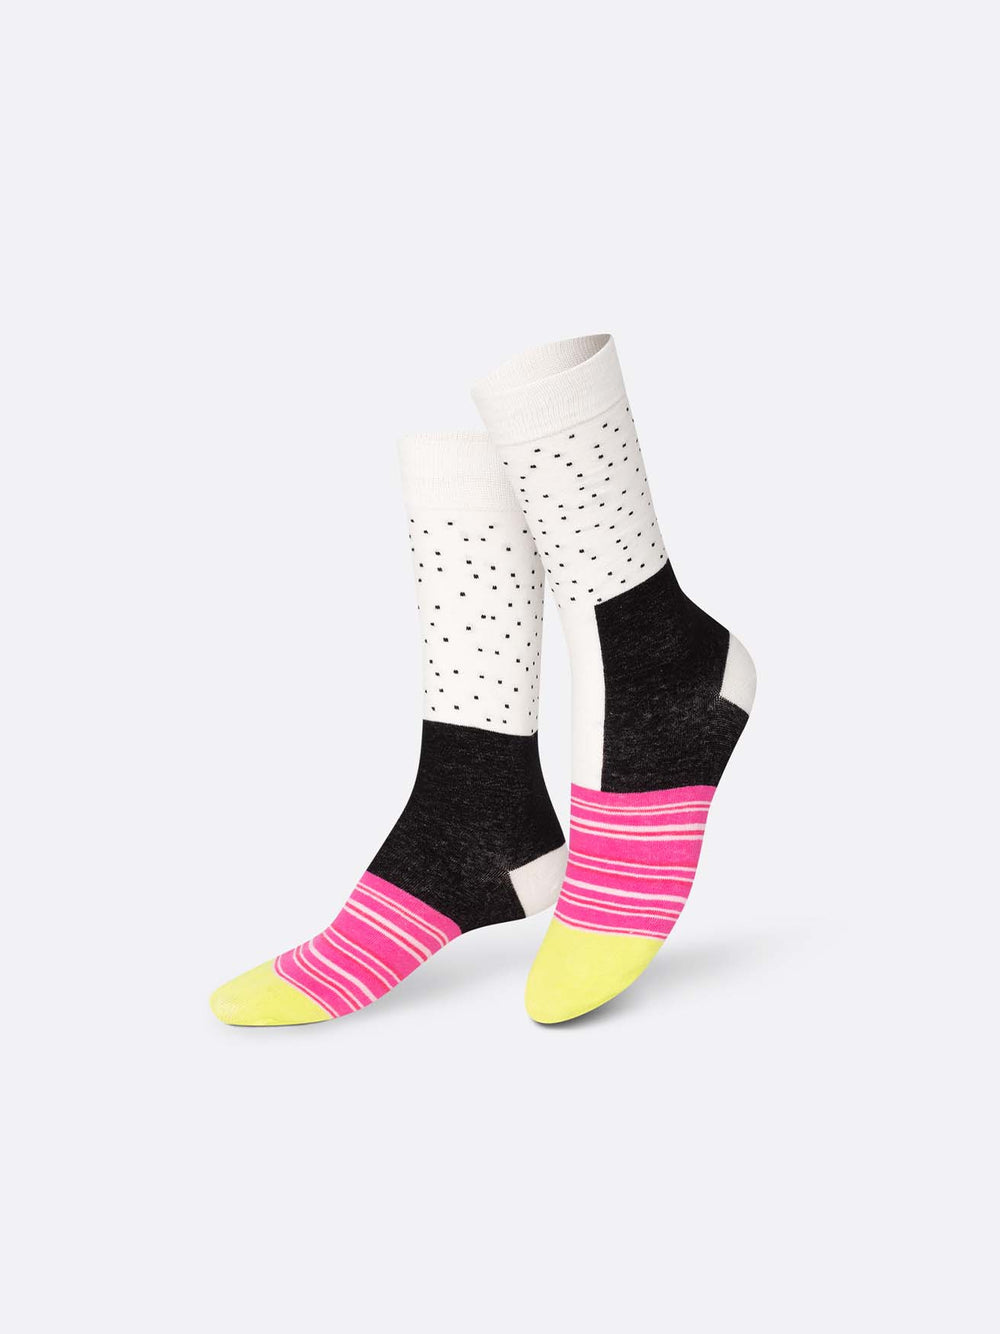 Cali Roll Socks - #Perch#